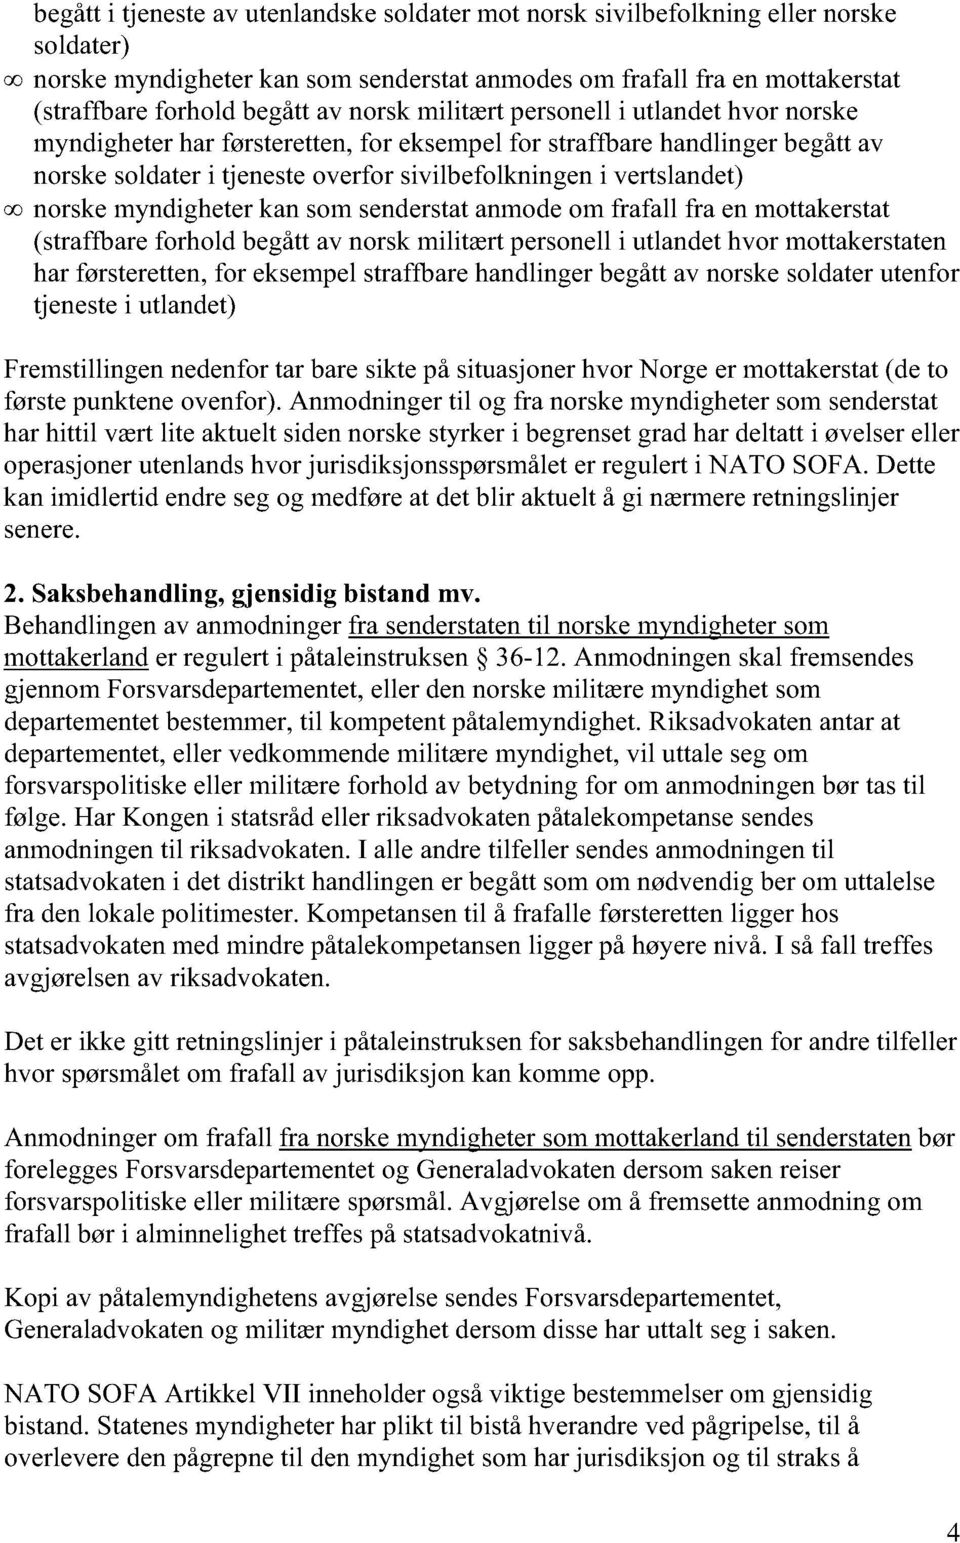 09 norske myndigheter kan som senderstat anmode om frafall fra en mottakerstat (straffbare forhold begått av norsk militært personell i utlandet hvor mottakerstaten har førsteretten, for eksempel